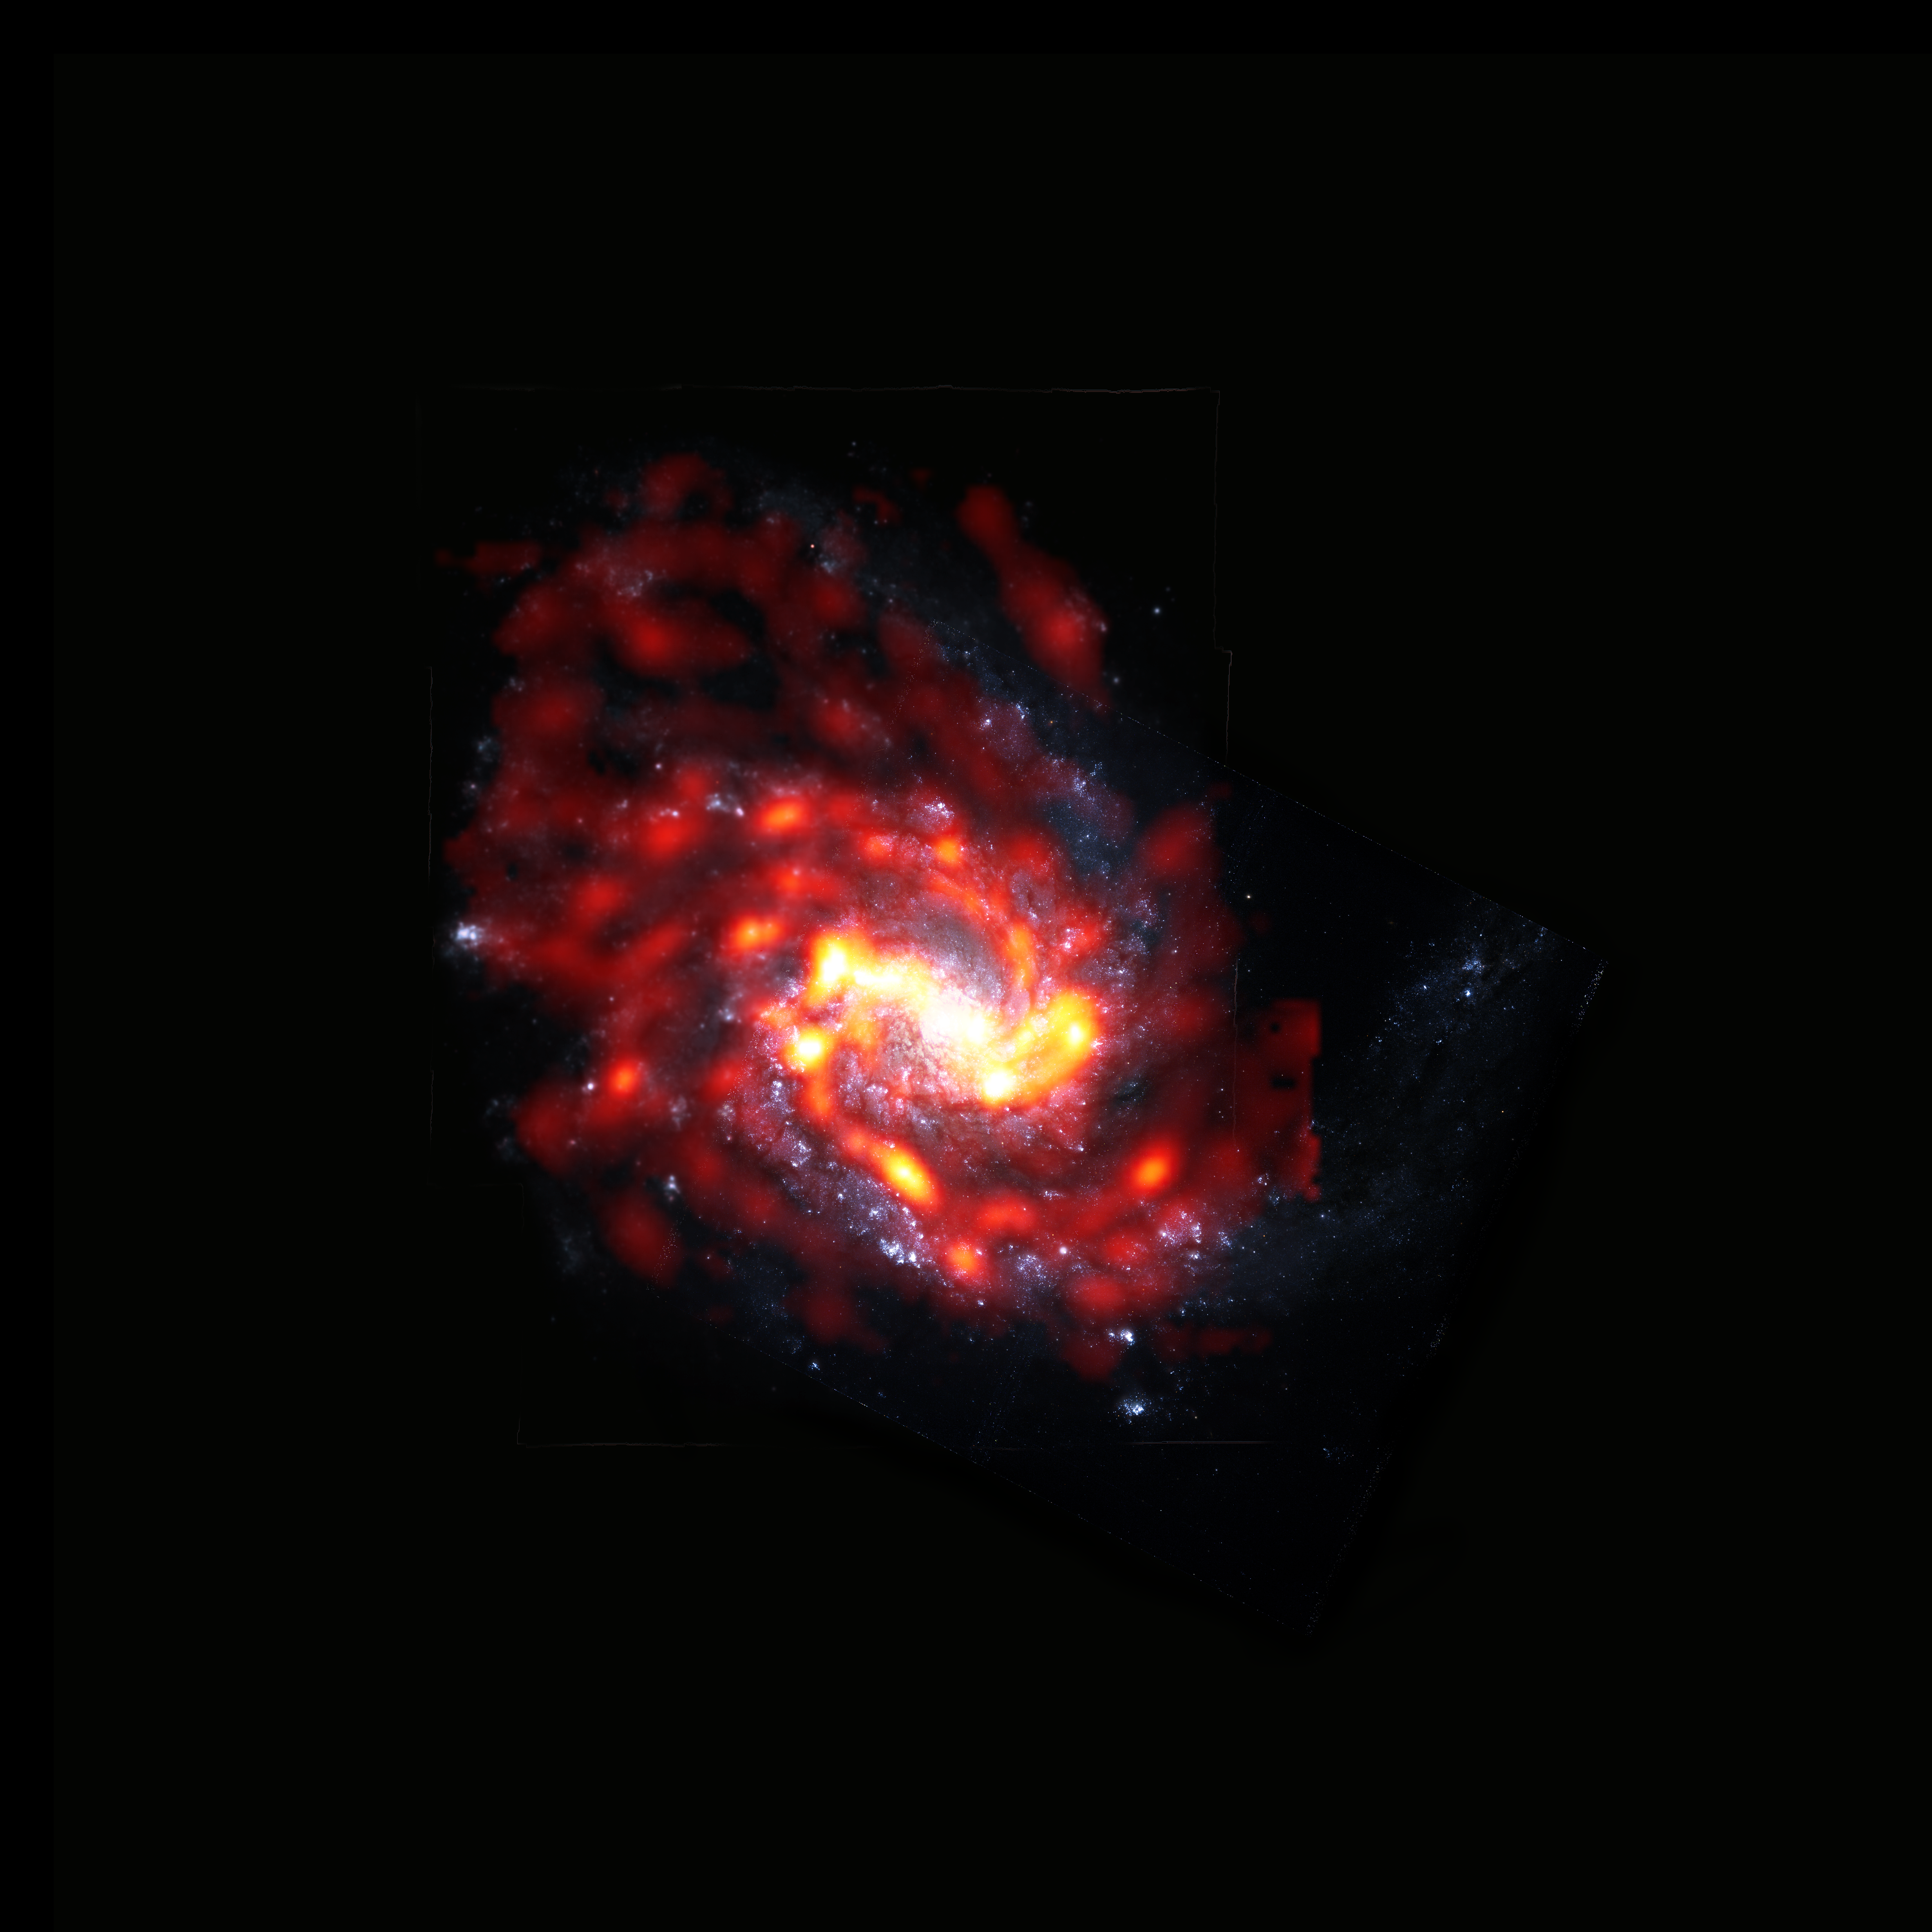 <p>La galaxia espiral NGC 4254 es una de las 2.000 galaxias que viven y mueren a merced de los procesos físicos extremos que se dan en el cúmulo de Virgo. Esta imagen se generó a partir de datos de radio del gas molecular obtenidos por ALMA (rojo/naranja) y datos ópticos de las estrellas obtenidos con el telescopio espacial Hubble (blanco/azul). Créditos: ALMA (ESO/NAOJ/NRAO)/S. Dagnello (NRAO)</p>
